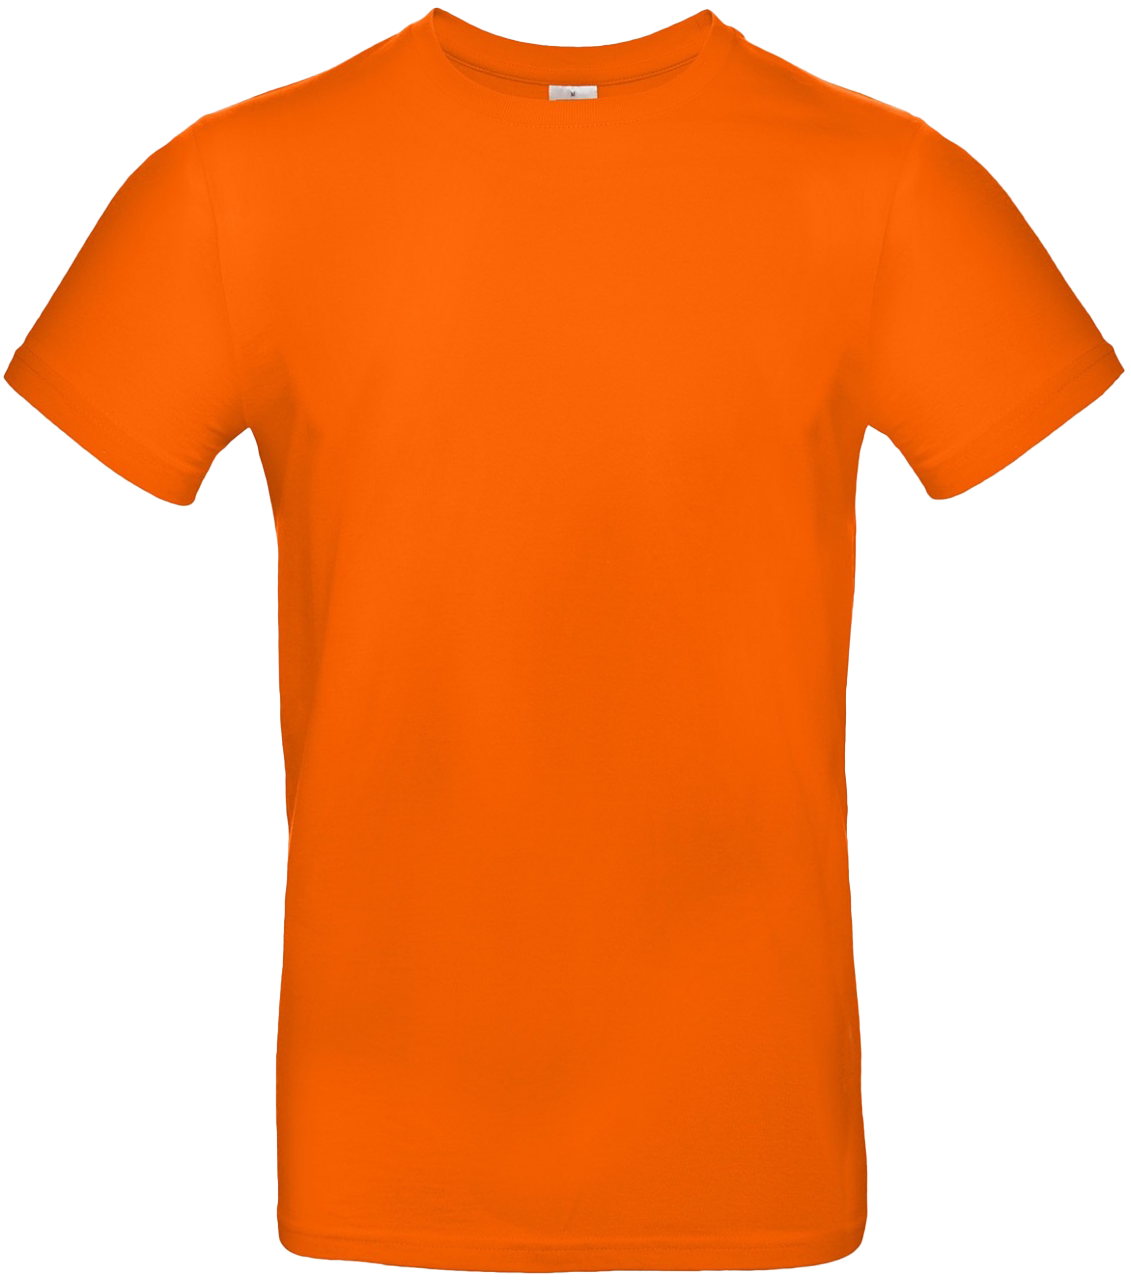 T-shirt E#190 Orange 54